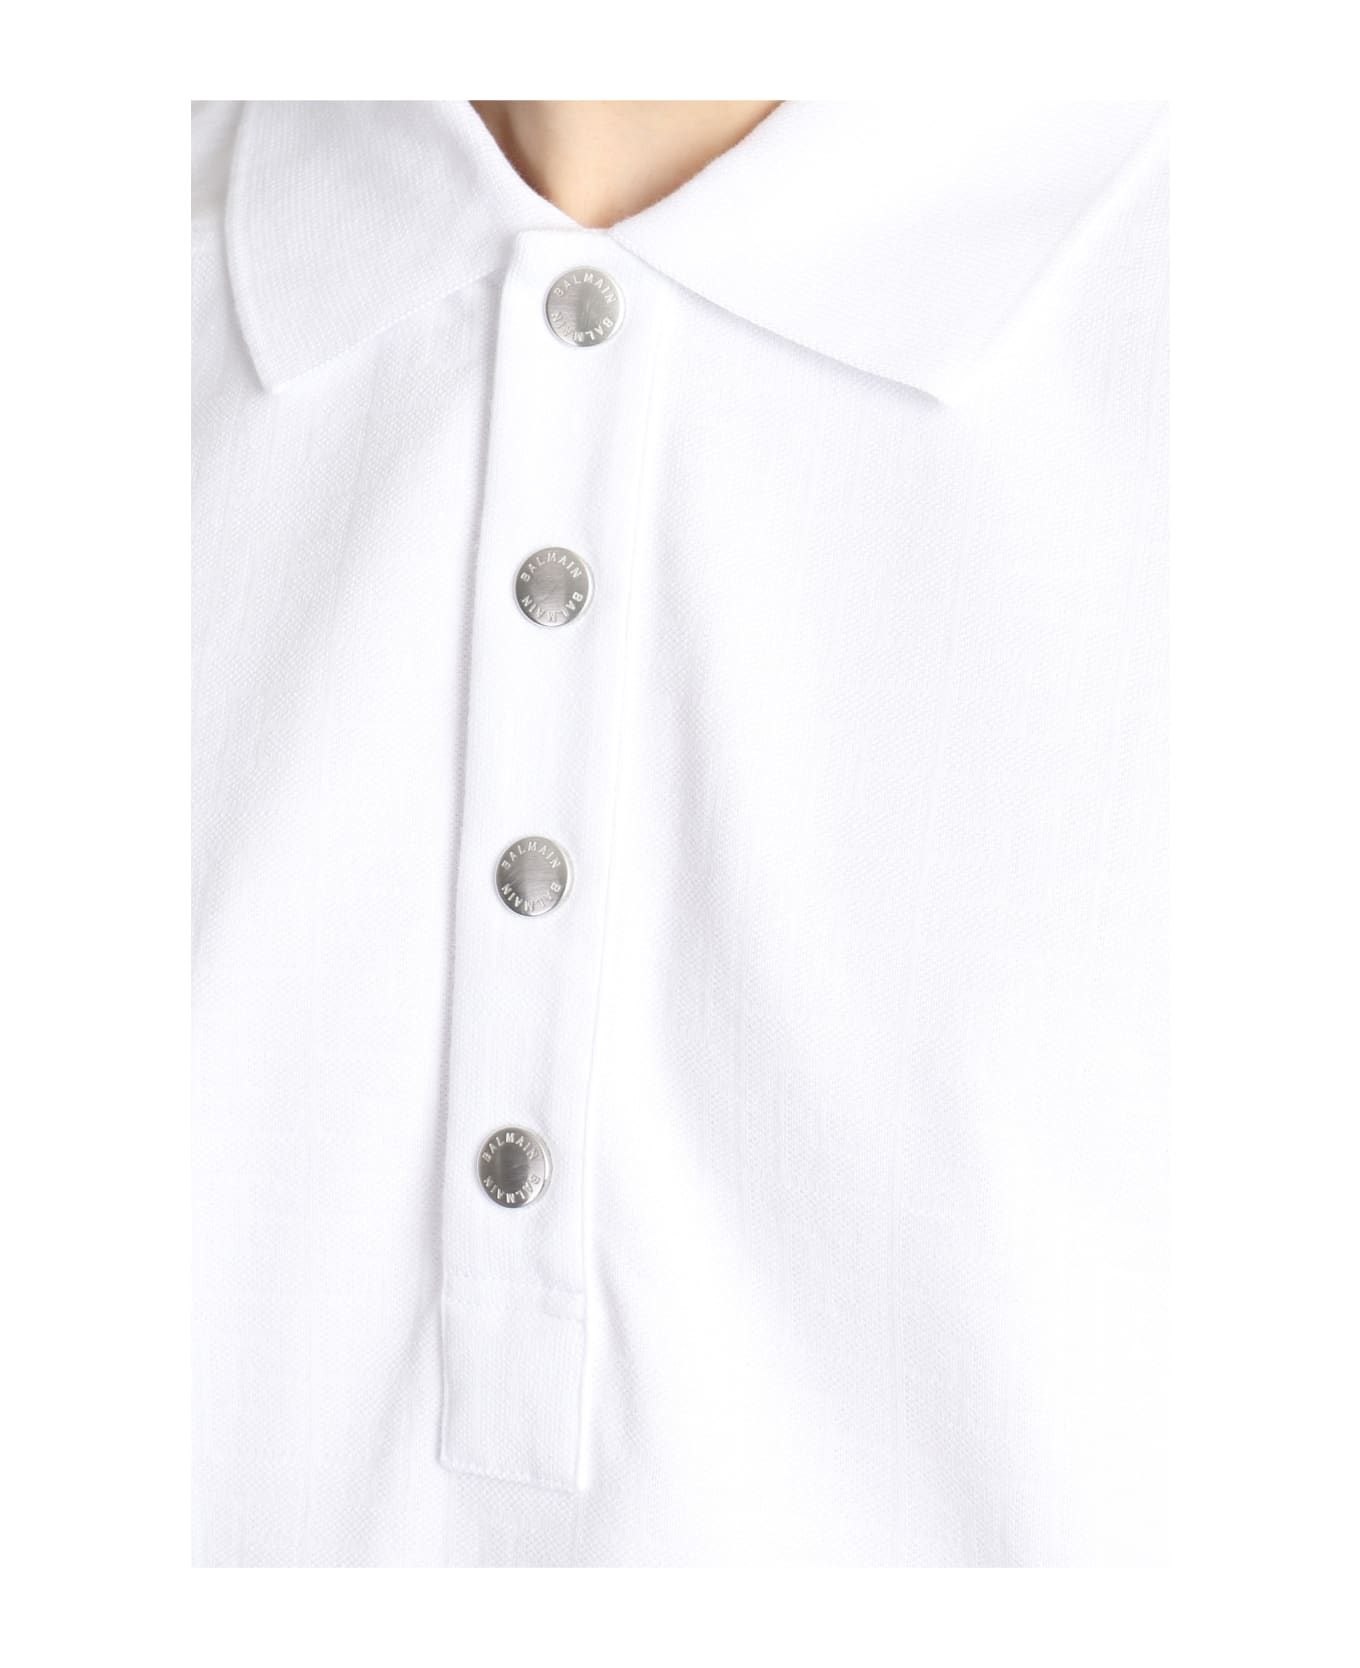 Balmain Polo - white ポロシャツ